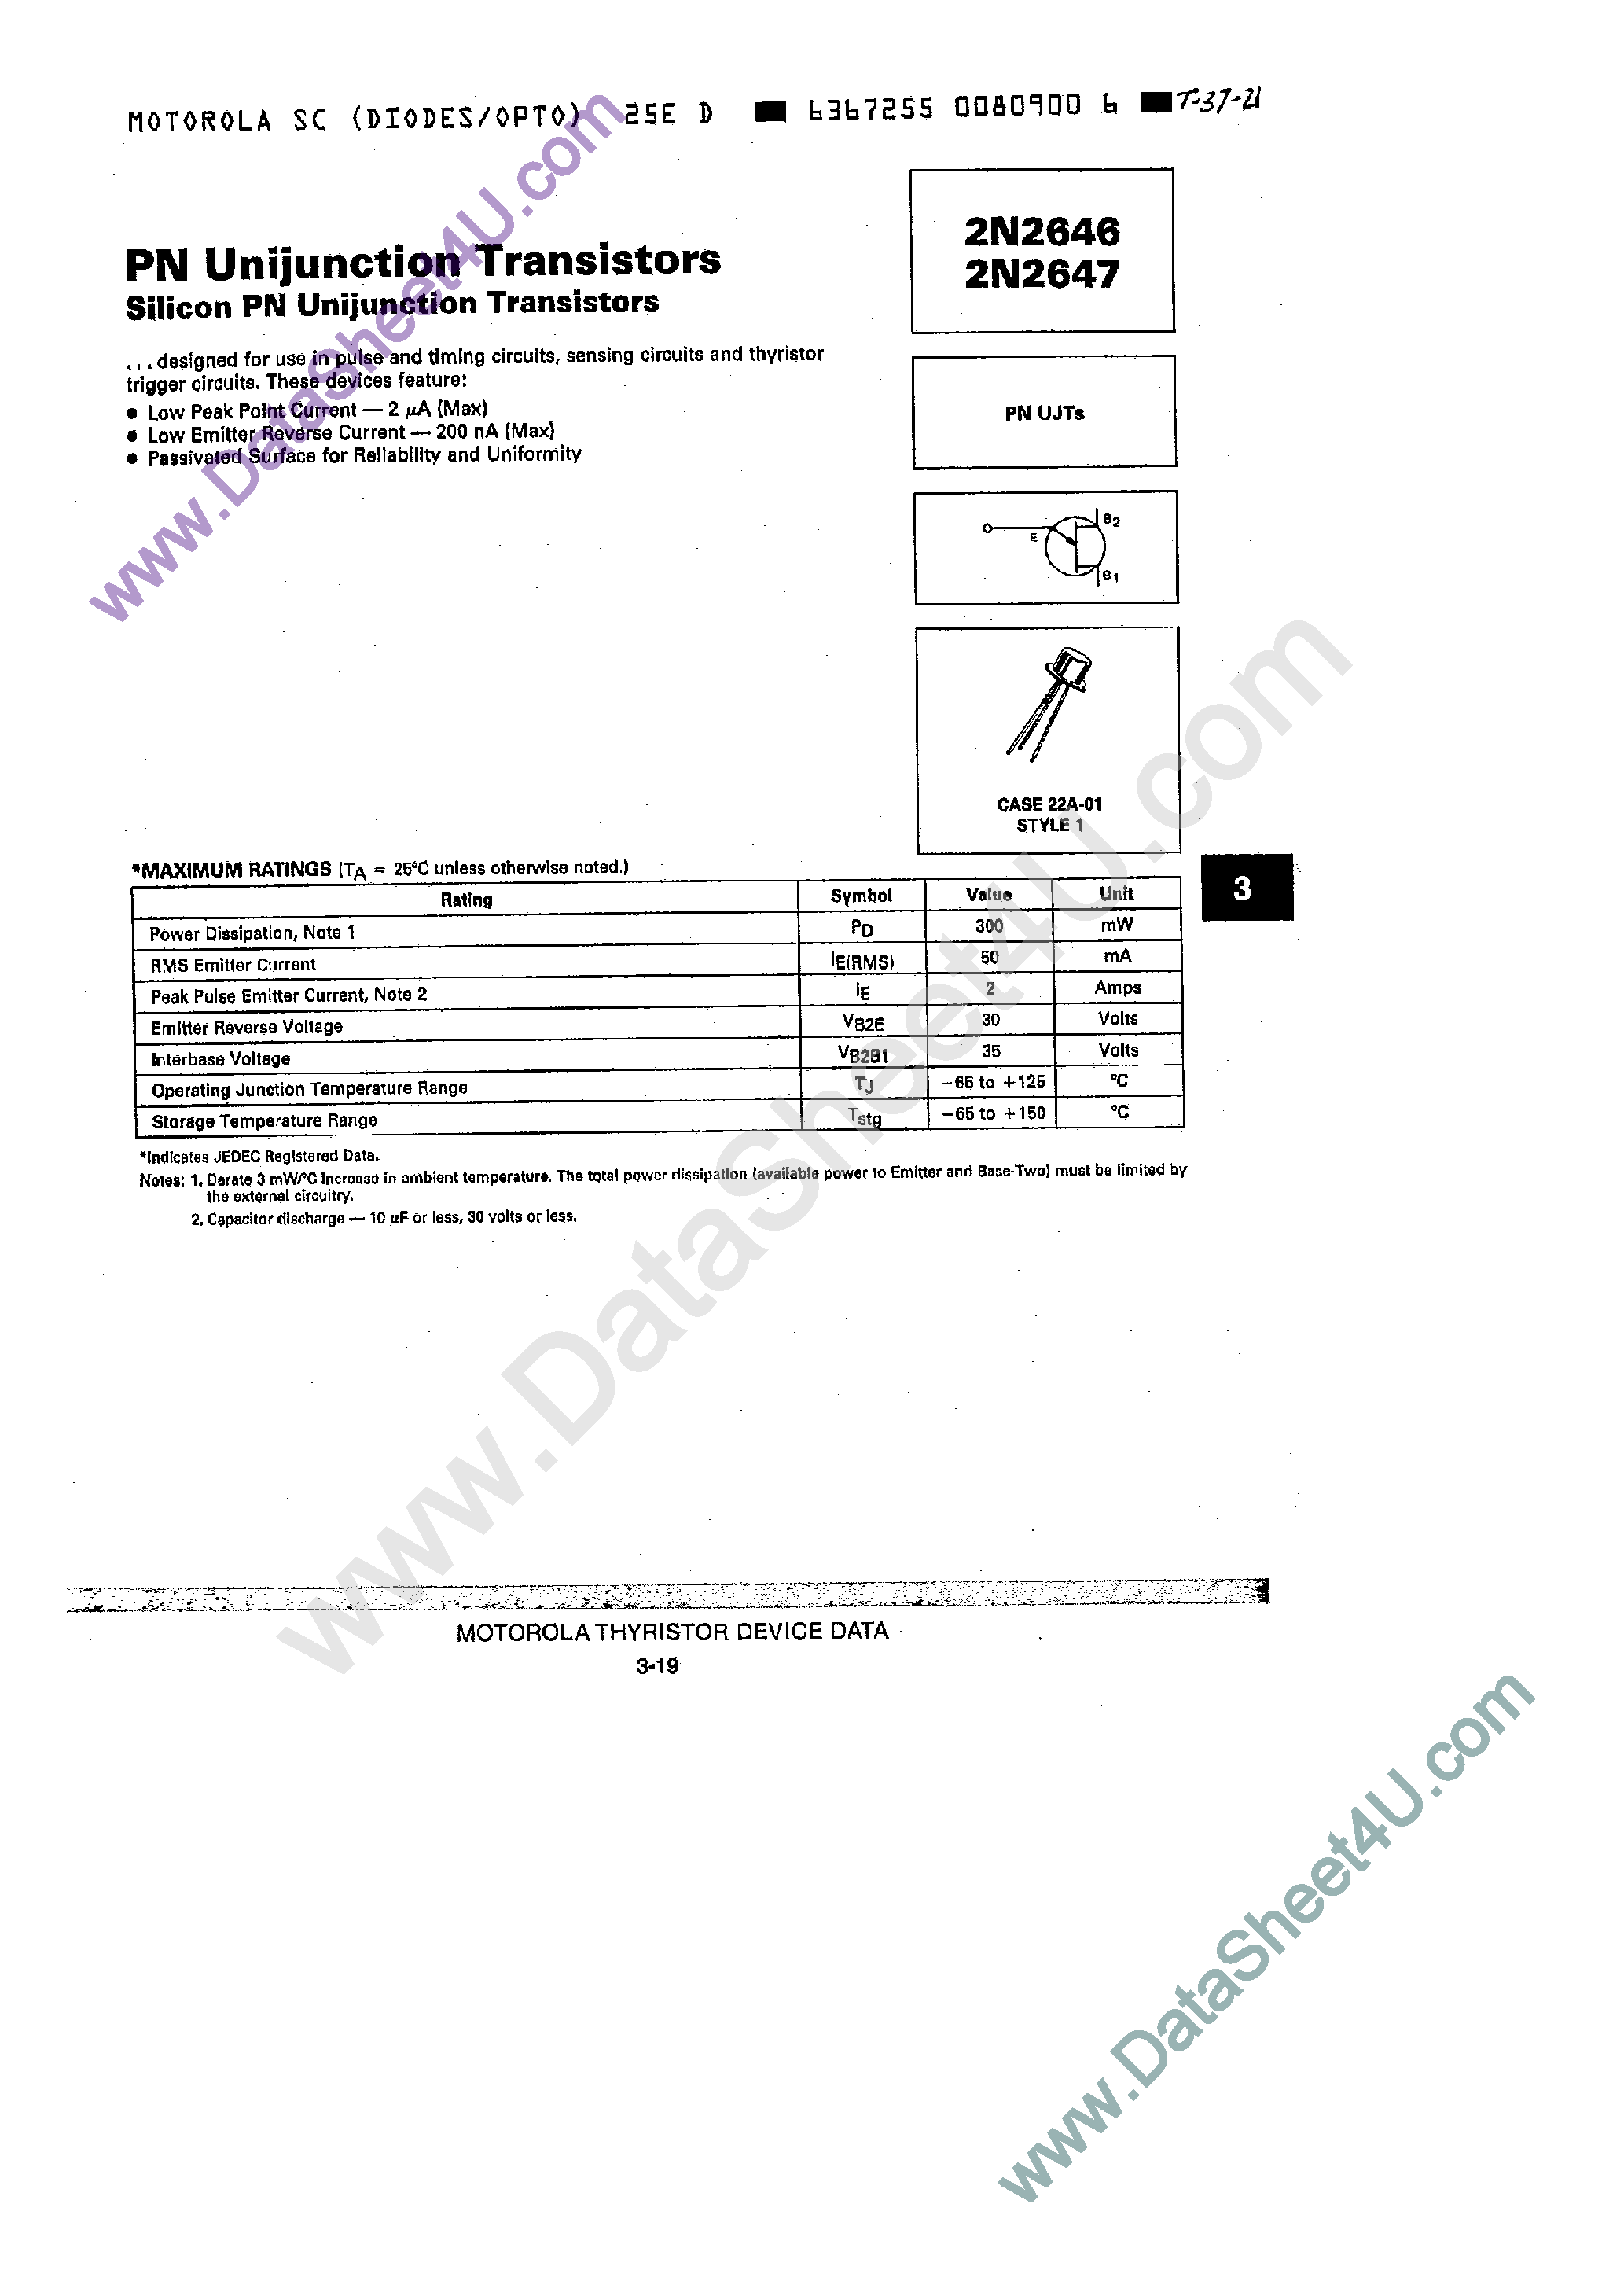 Datasheet 2N2646 - (2N2646 / 2N2647) Silicon PN unijunction transistor page 1